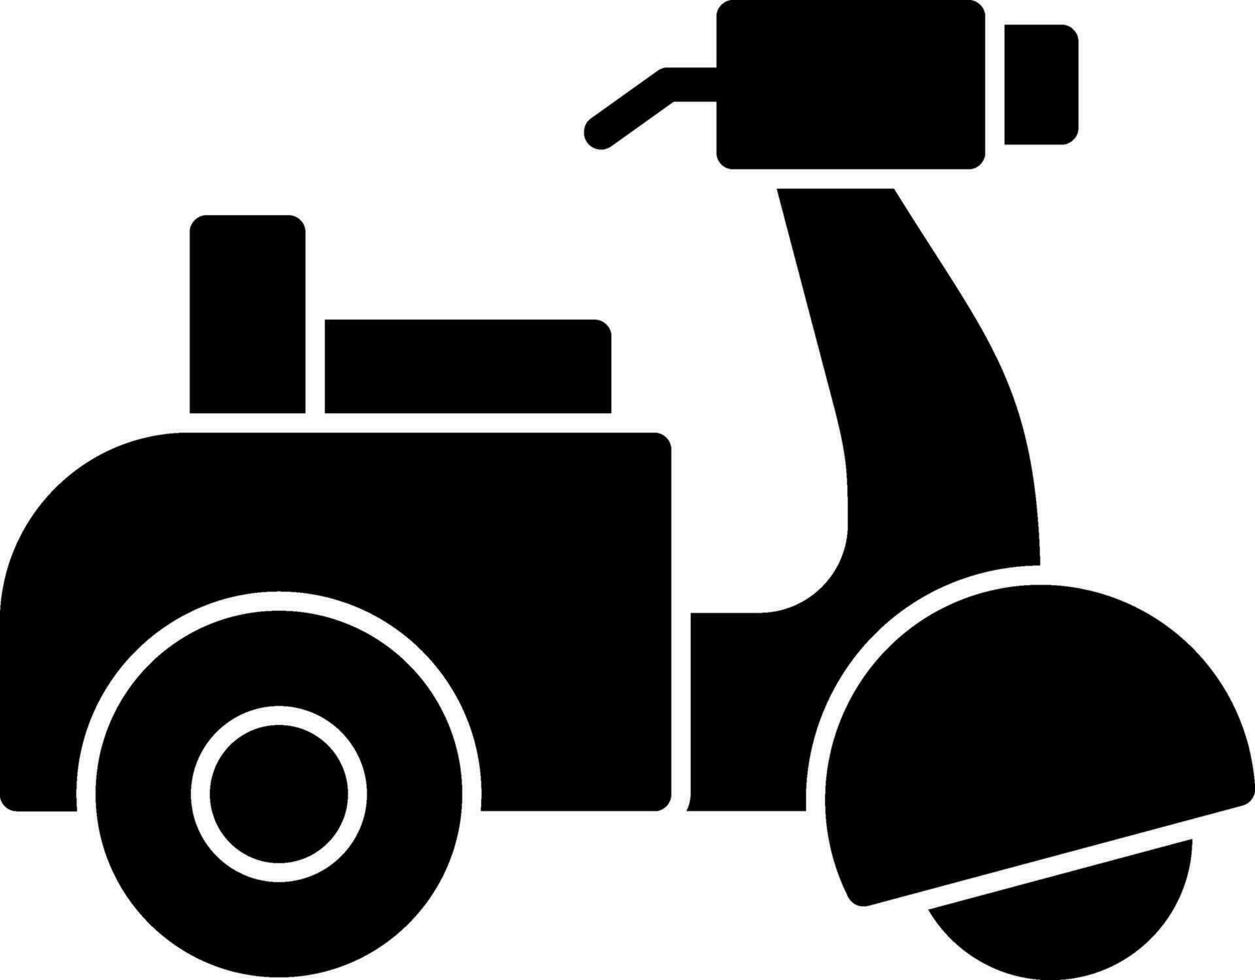 conception d'icône de vecteur de scooter